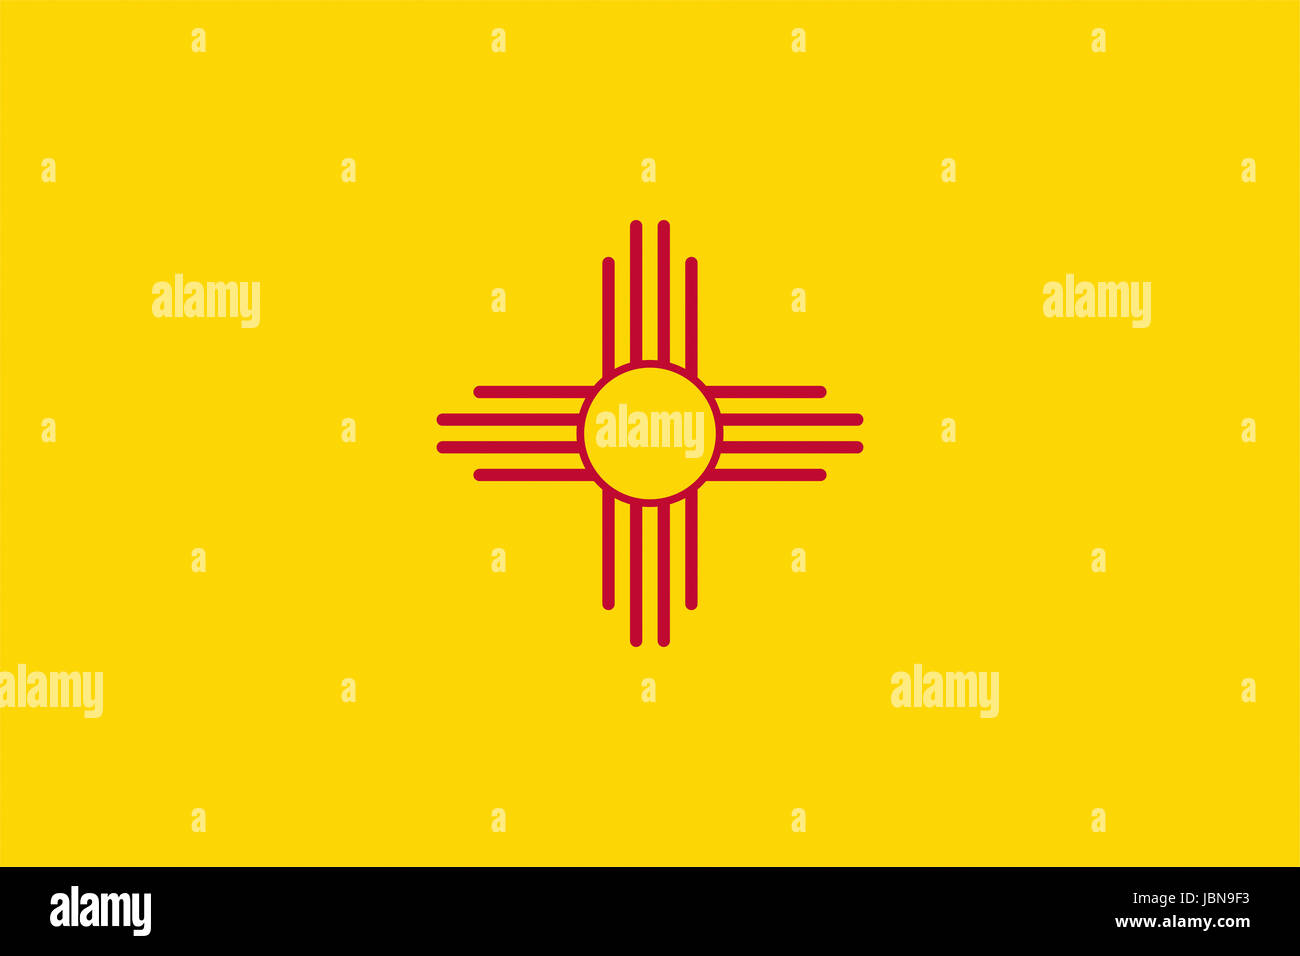 Ilustración de la bandera del estado de Nuevo México en los Estados Unidos Foto de stock